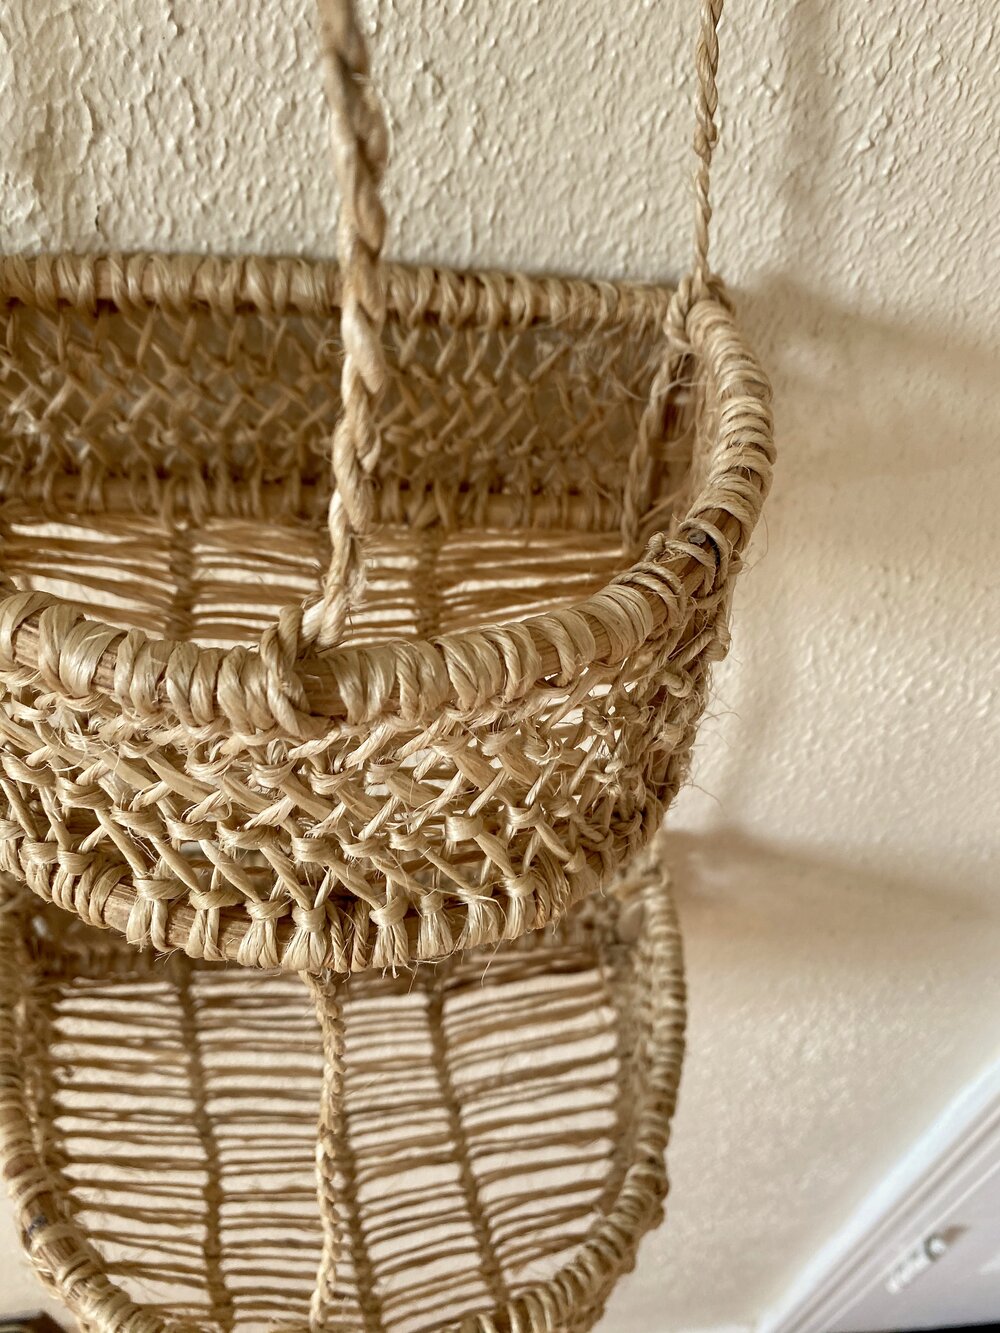 Handmade Luna Tier Hanger Basket